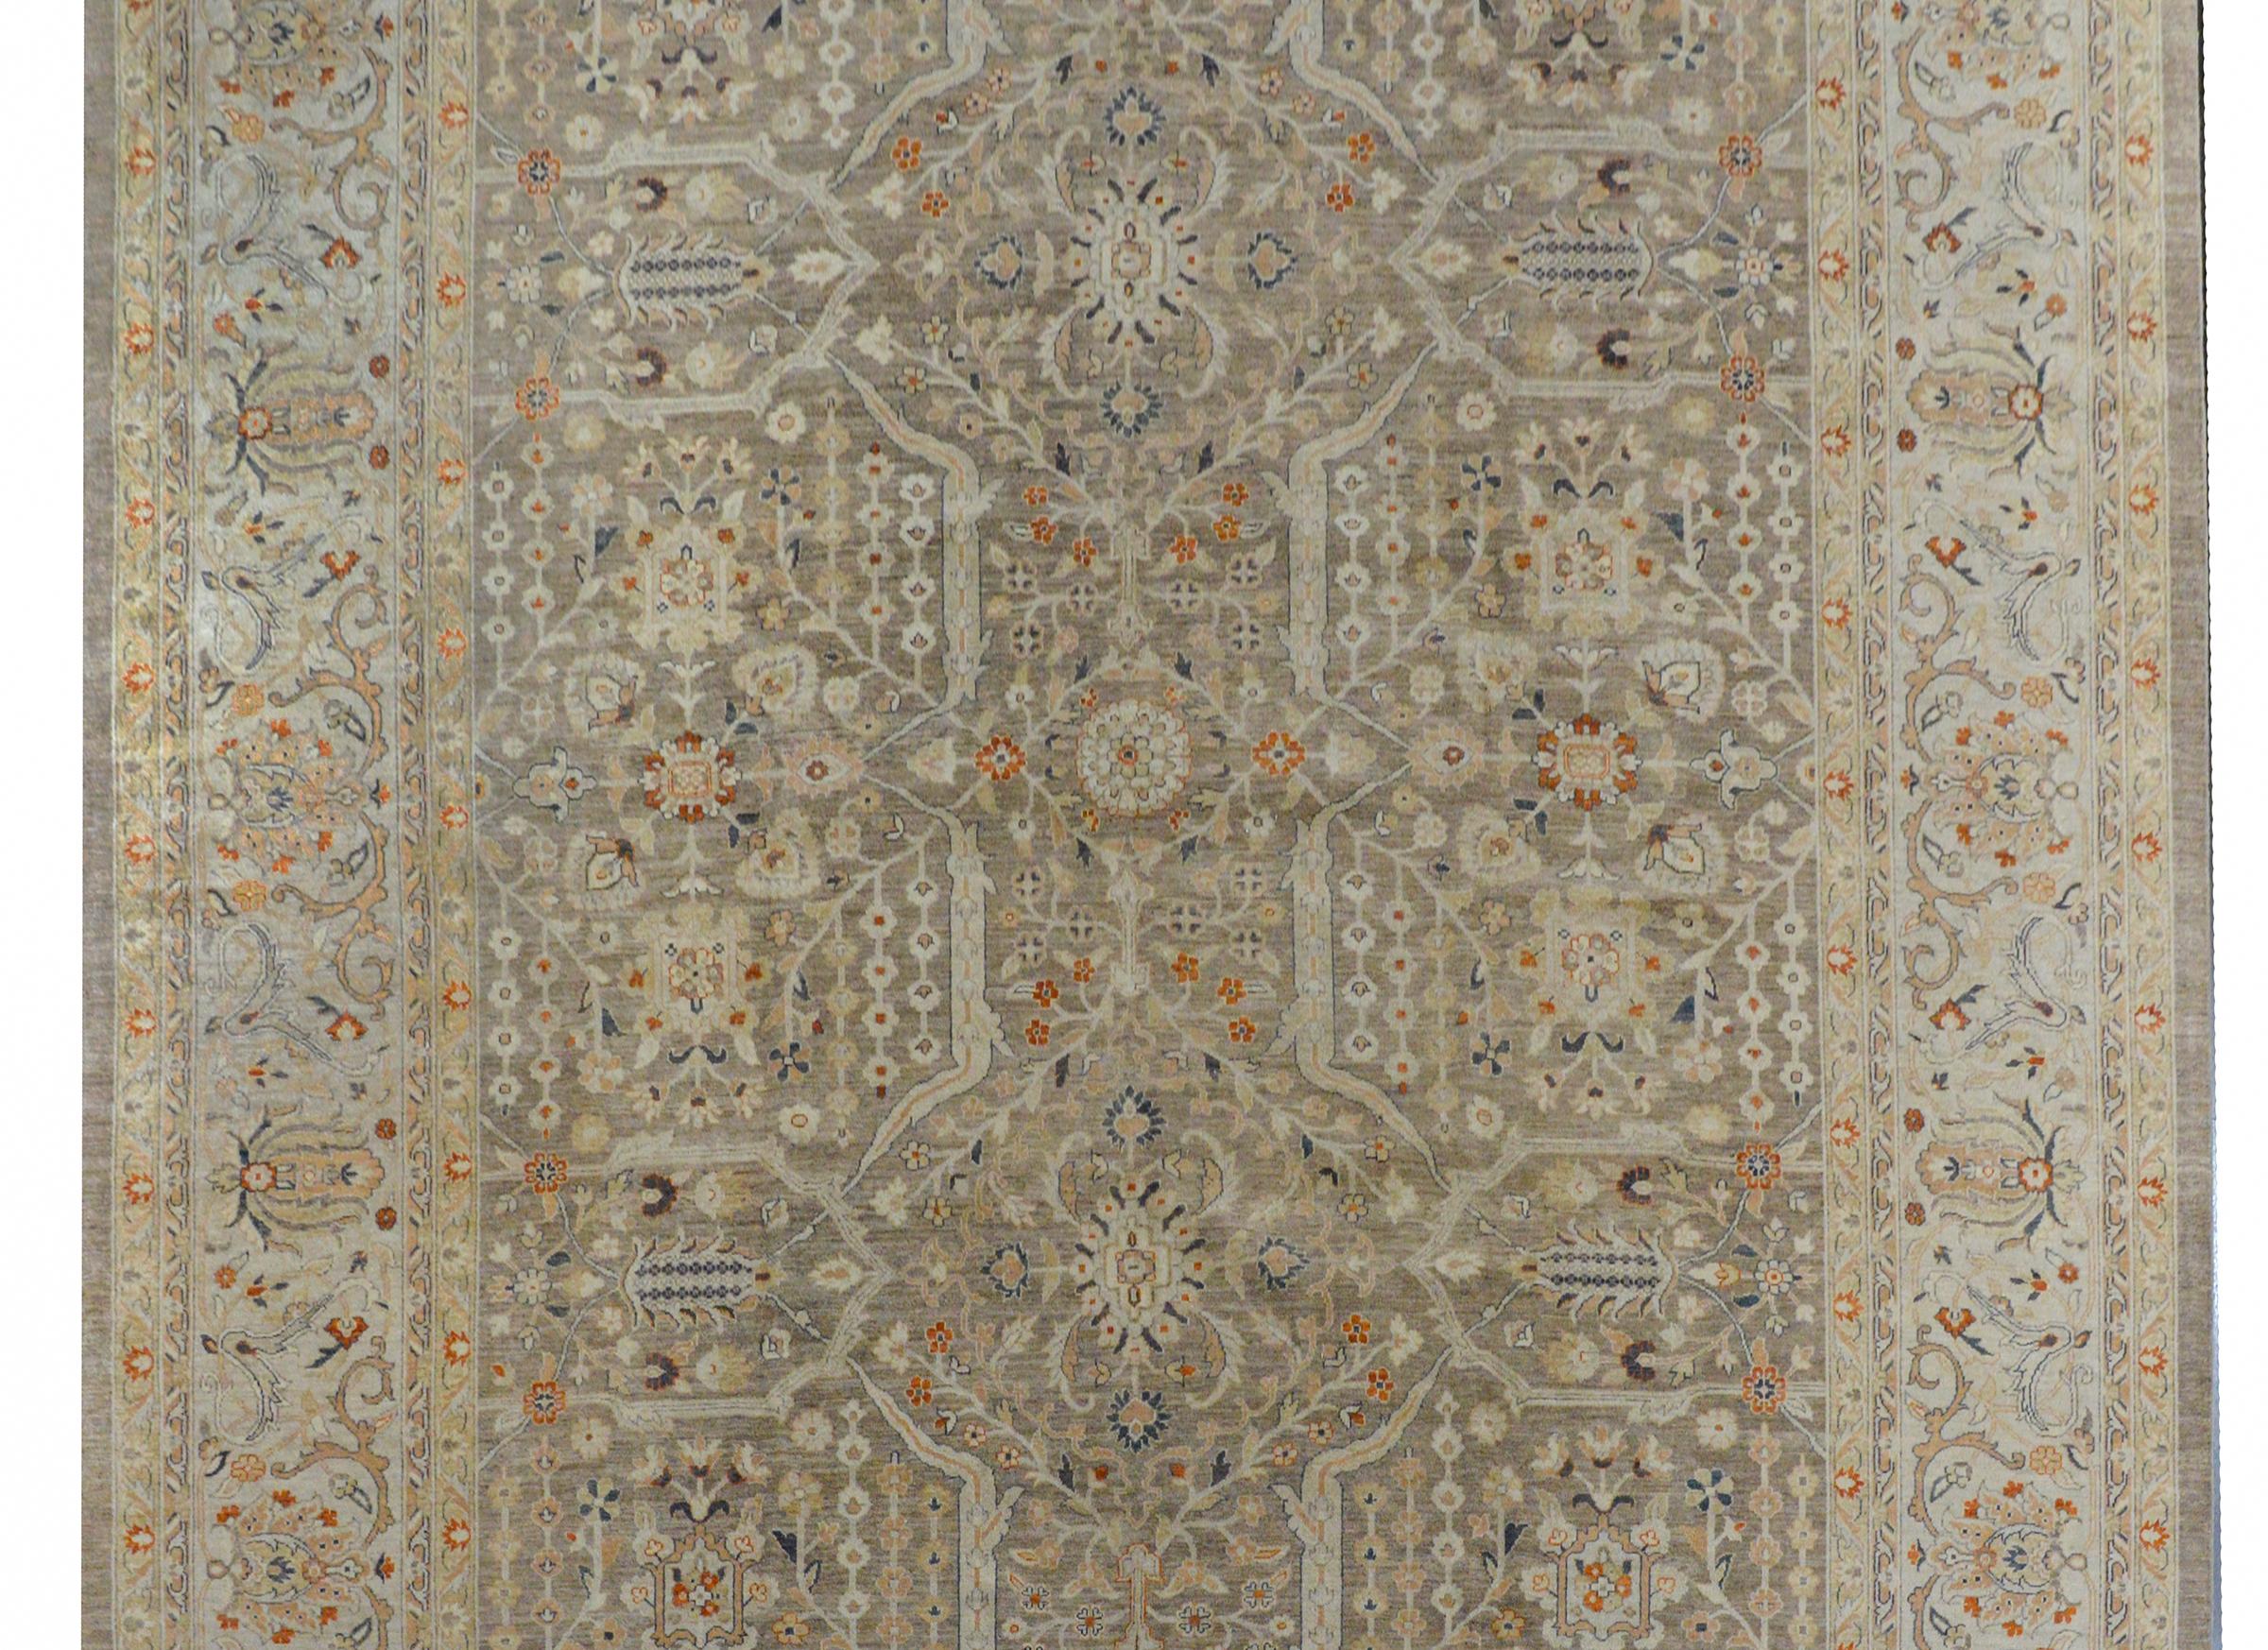 Ein schöner zeitgenössischer indischer Peshawar-Teppich mit einem Allover-Muster aus unzähligen Blumen, Ranken und Blättern, gewebt aus orange-, indigo-, gold- und cremefarbener Wolle auf grauem Hintergrund. Die Bordüre ist in ähnlichen Farben mit